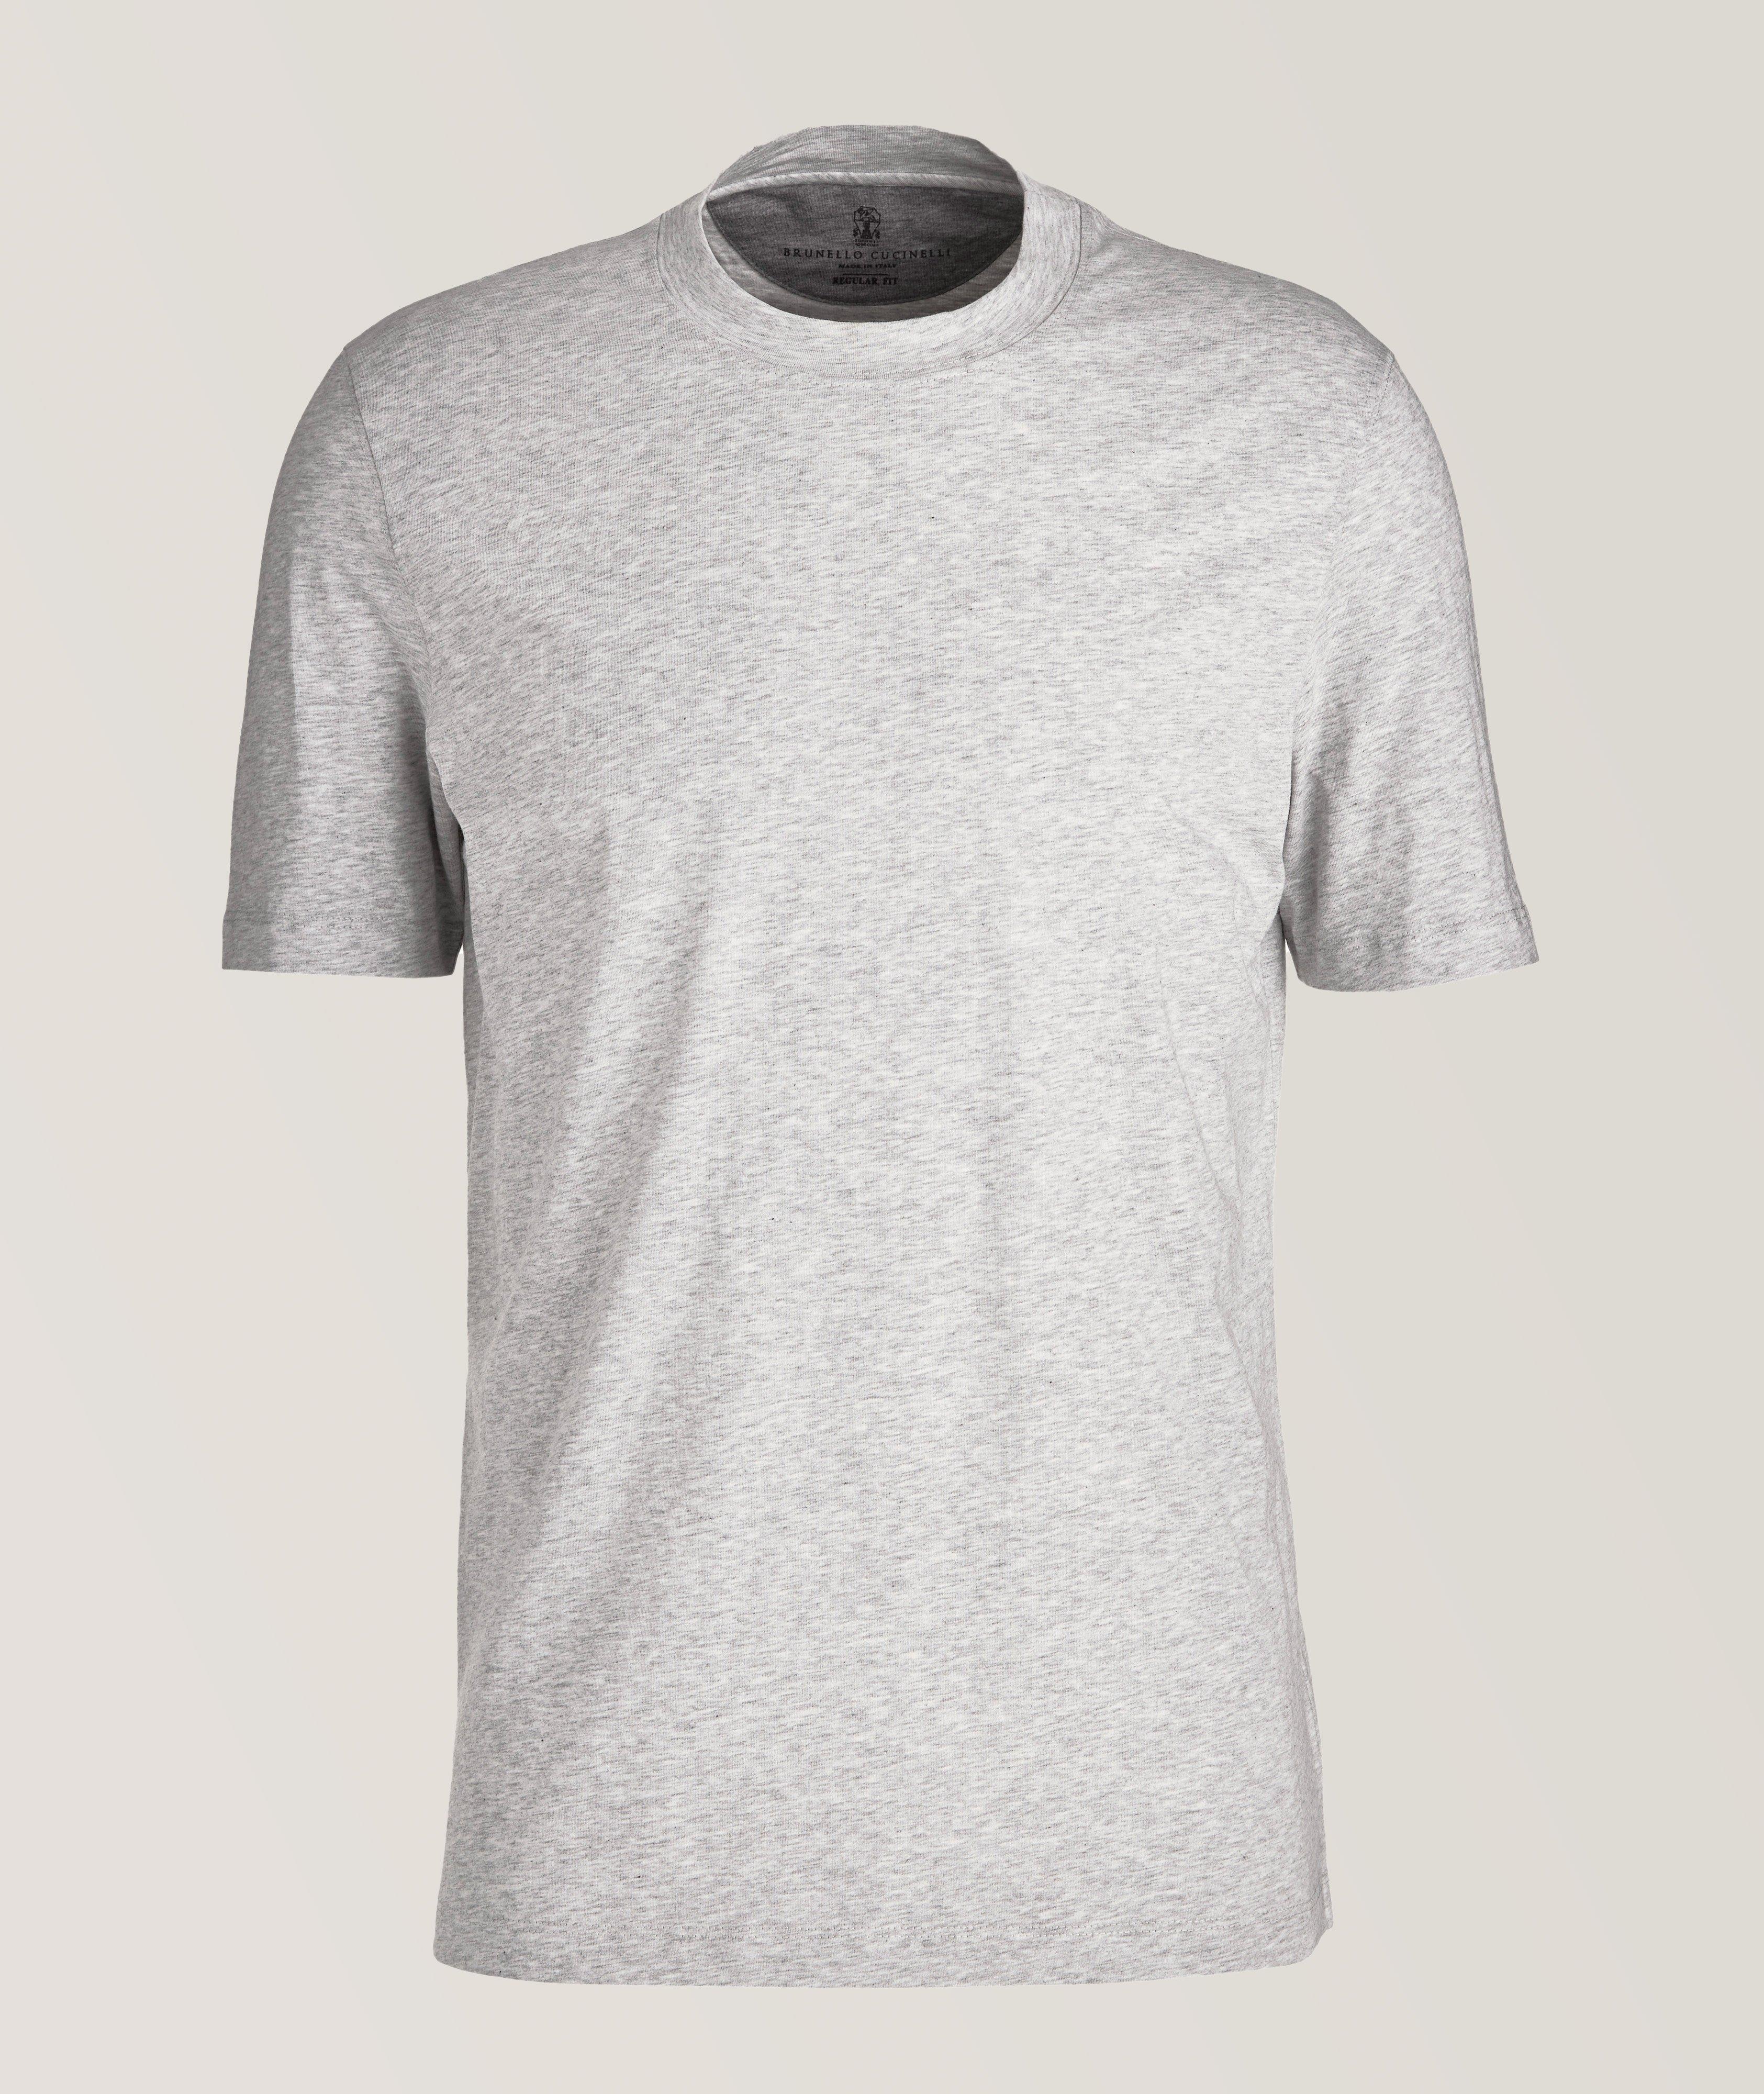 T-shirt en coton à encolure ronde de coupe standard image 0